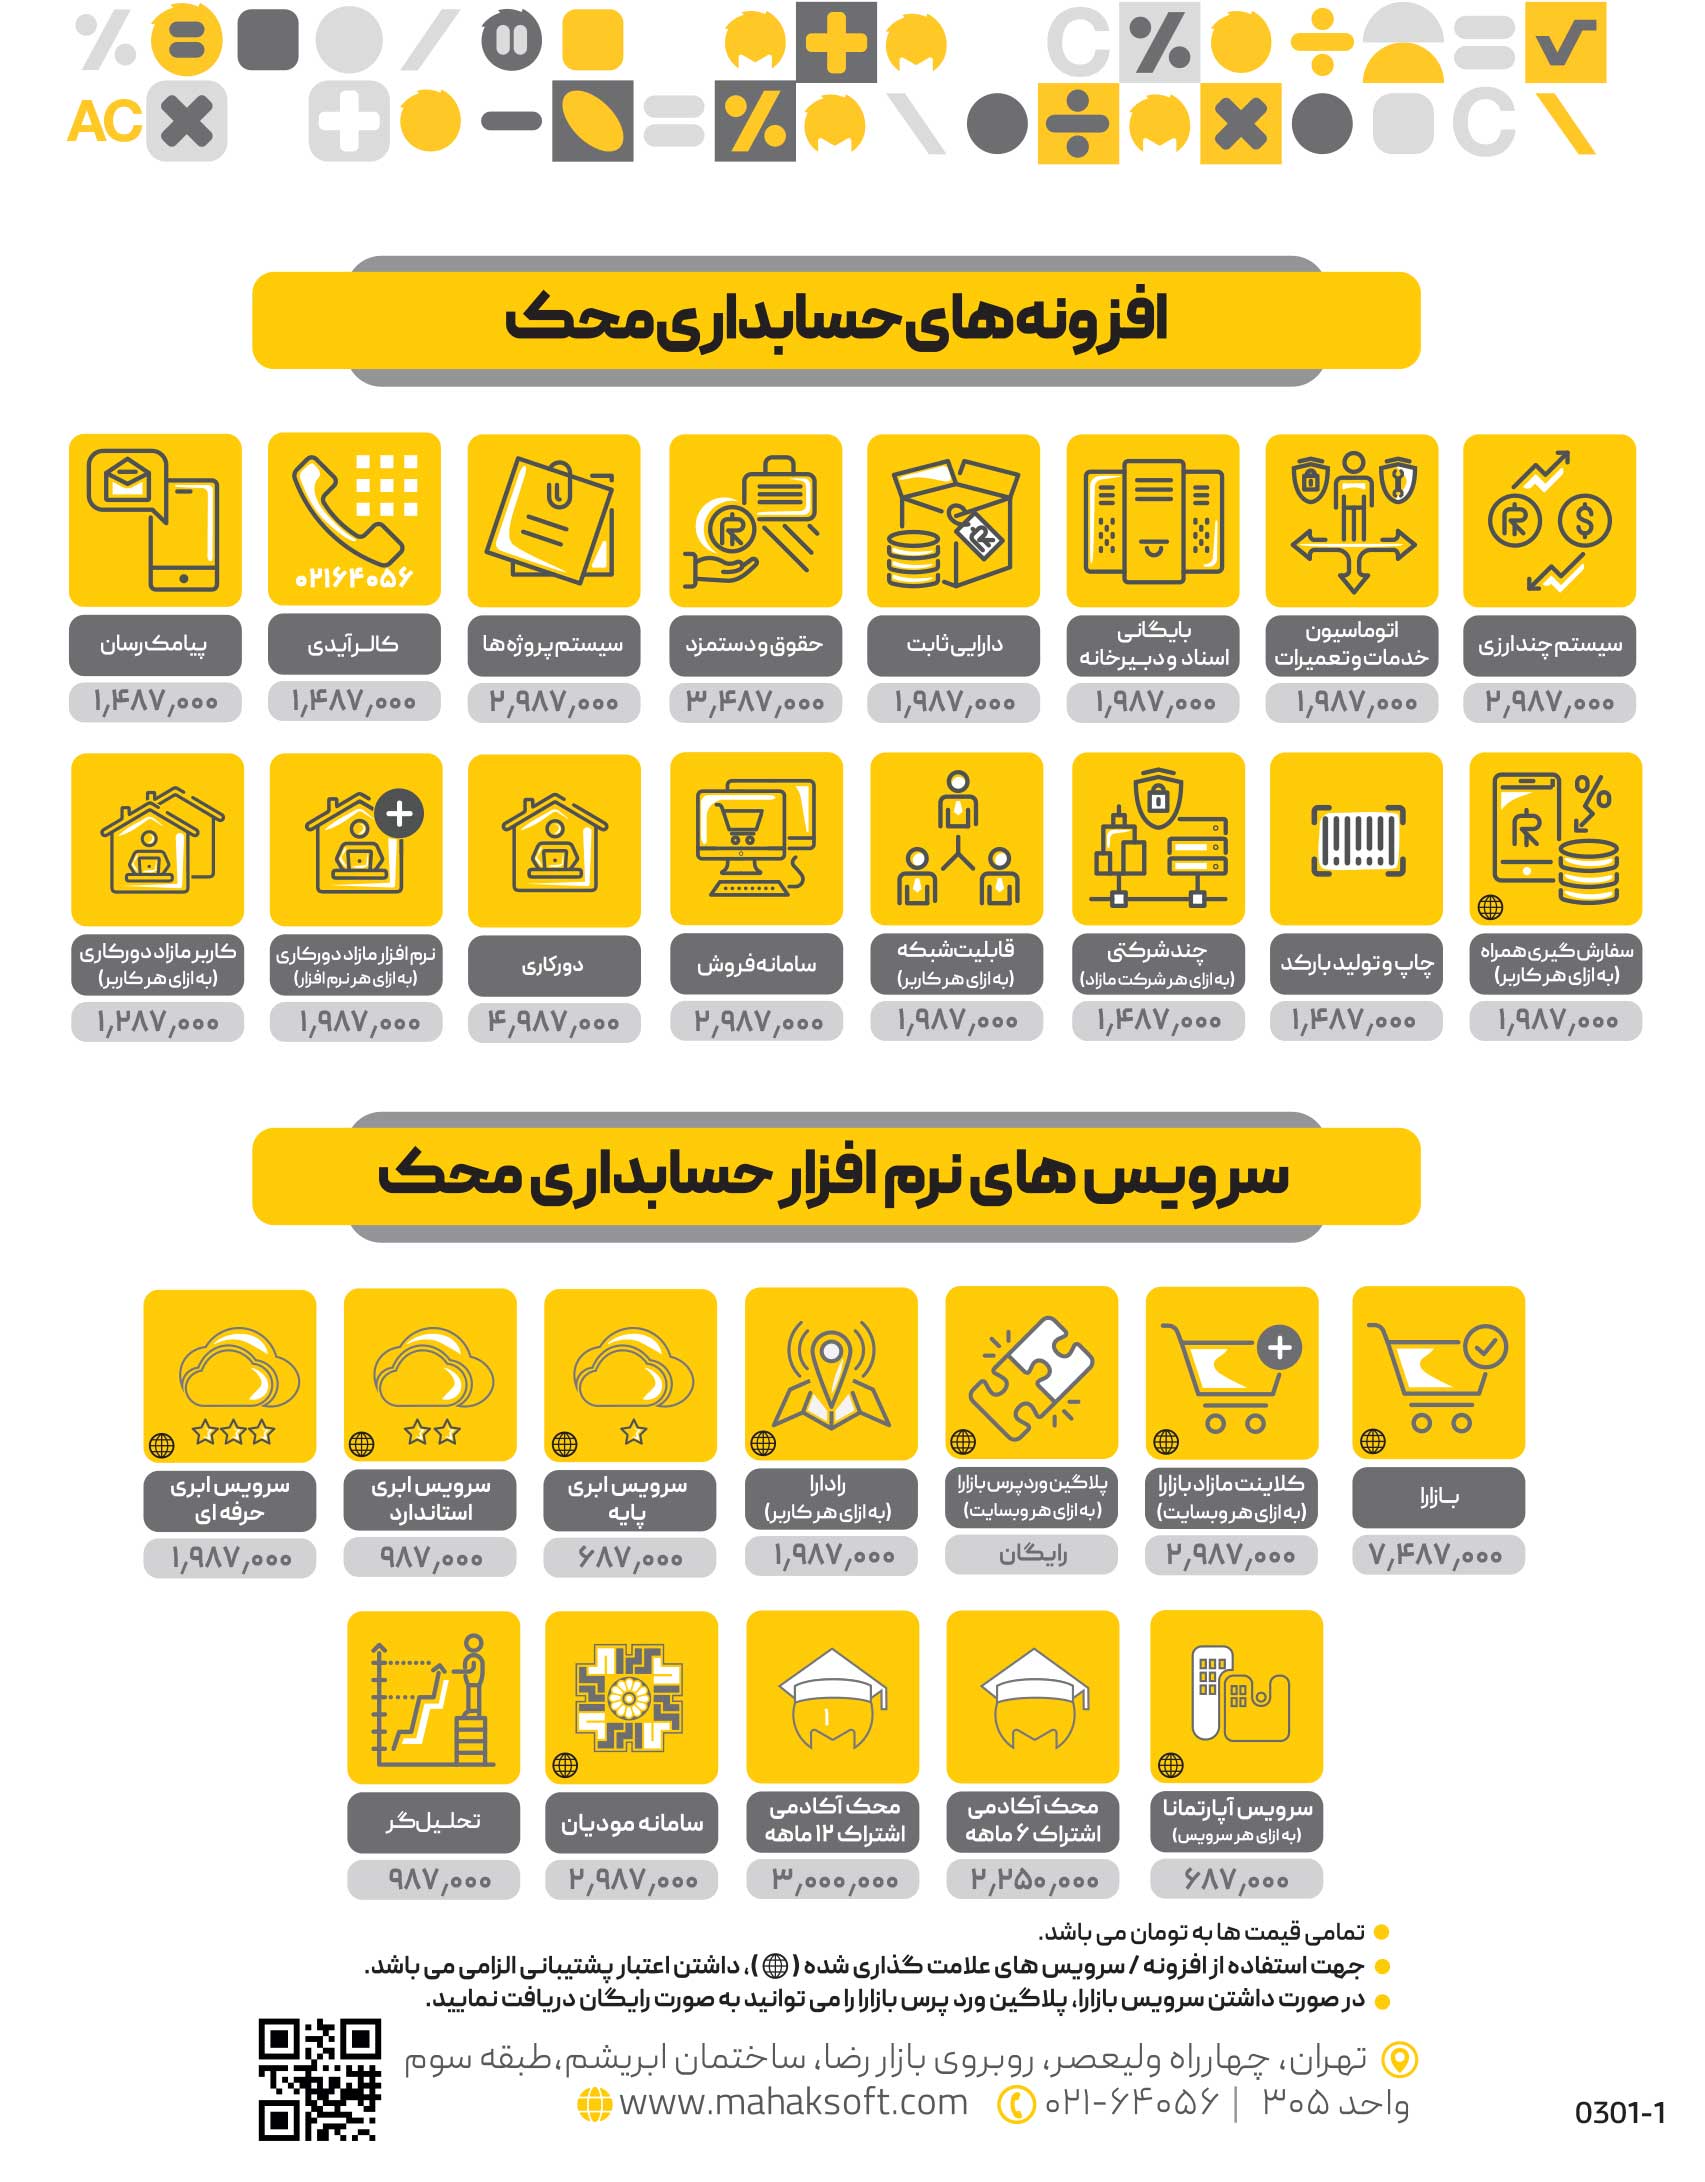 نرم افزار حسابداری در تبریز | افزونه های حسابداری محک